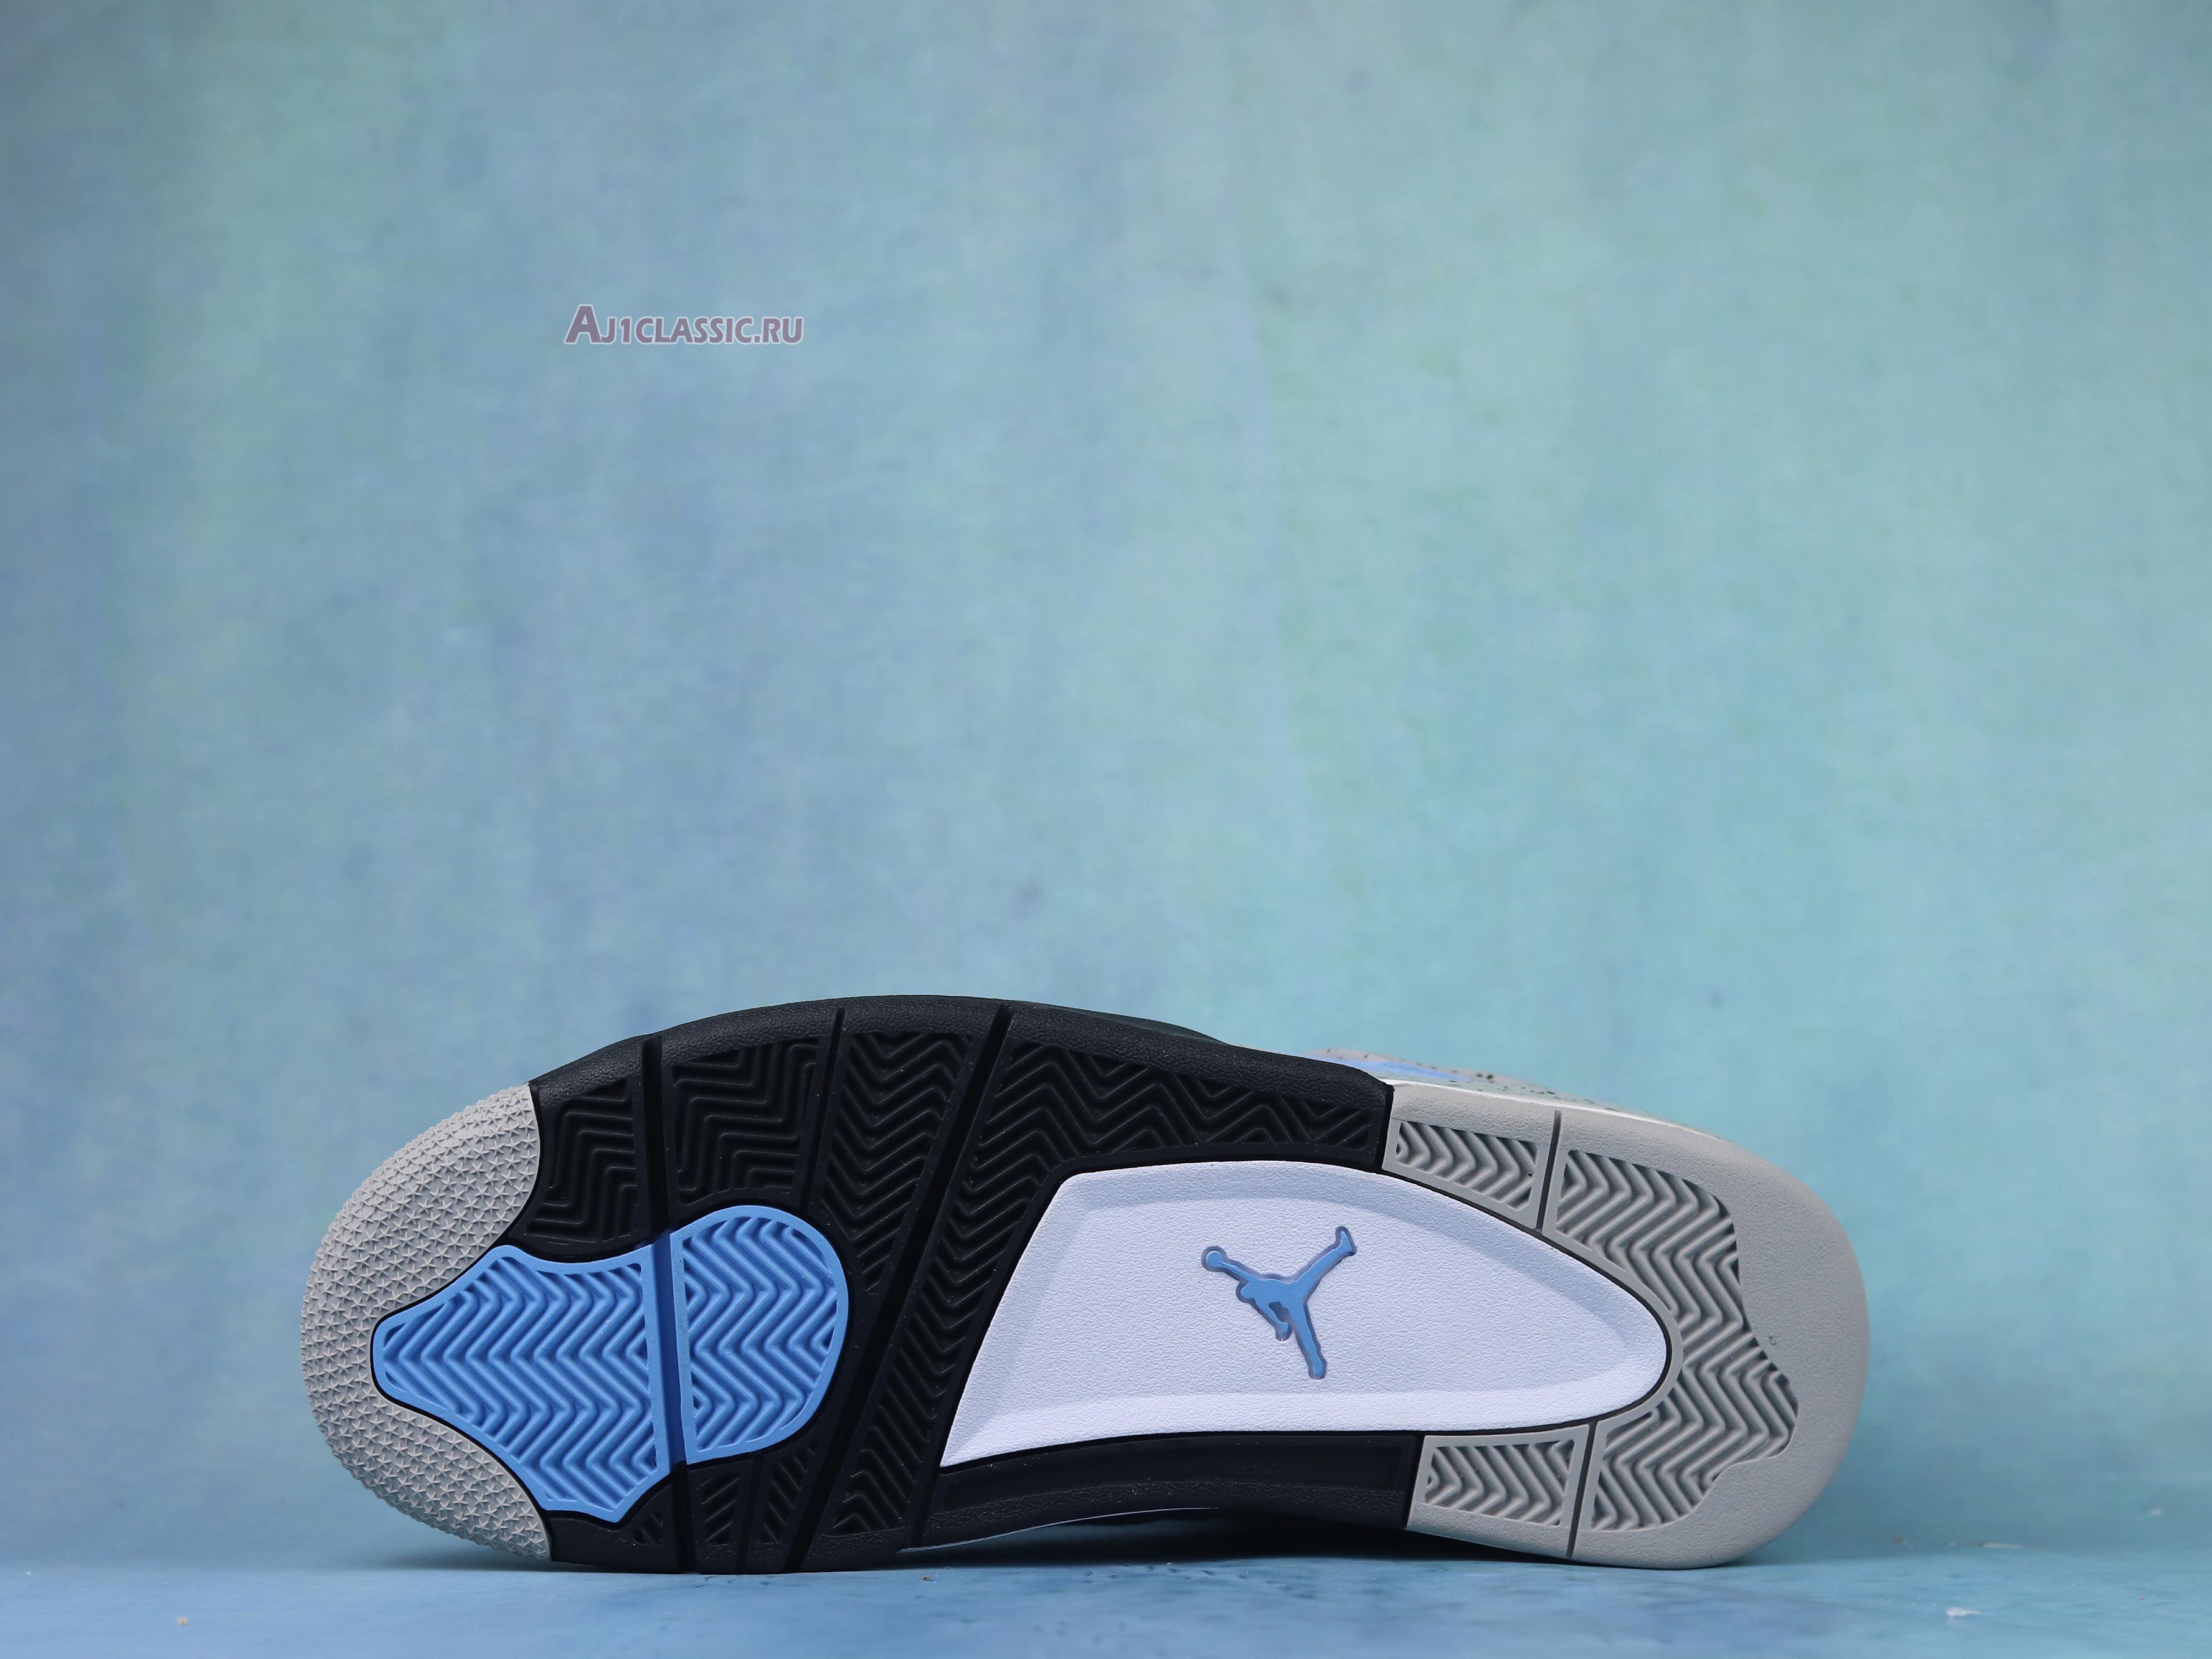 Air Jordan 4 Retro "University Blue" CT8527-400-02